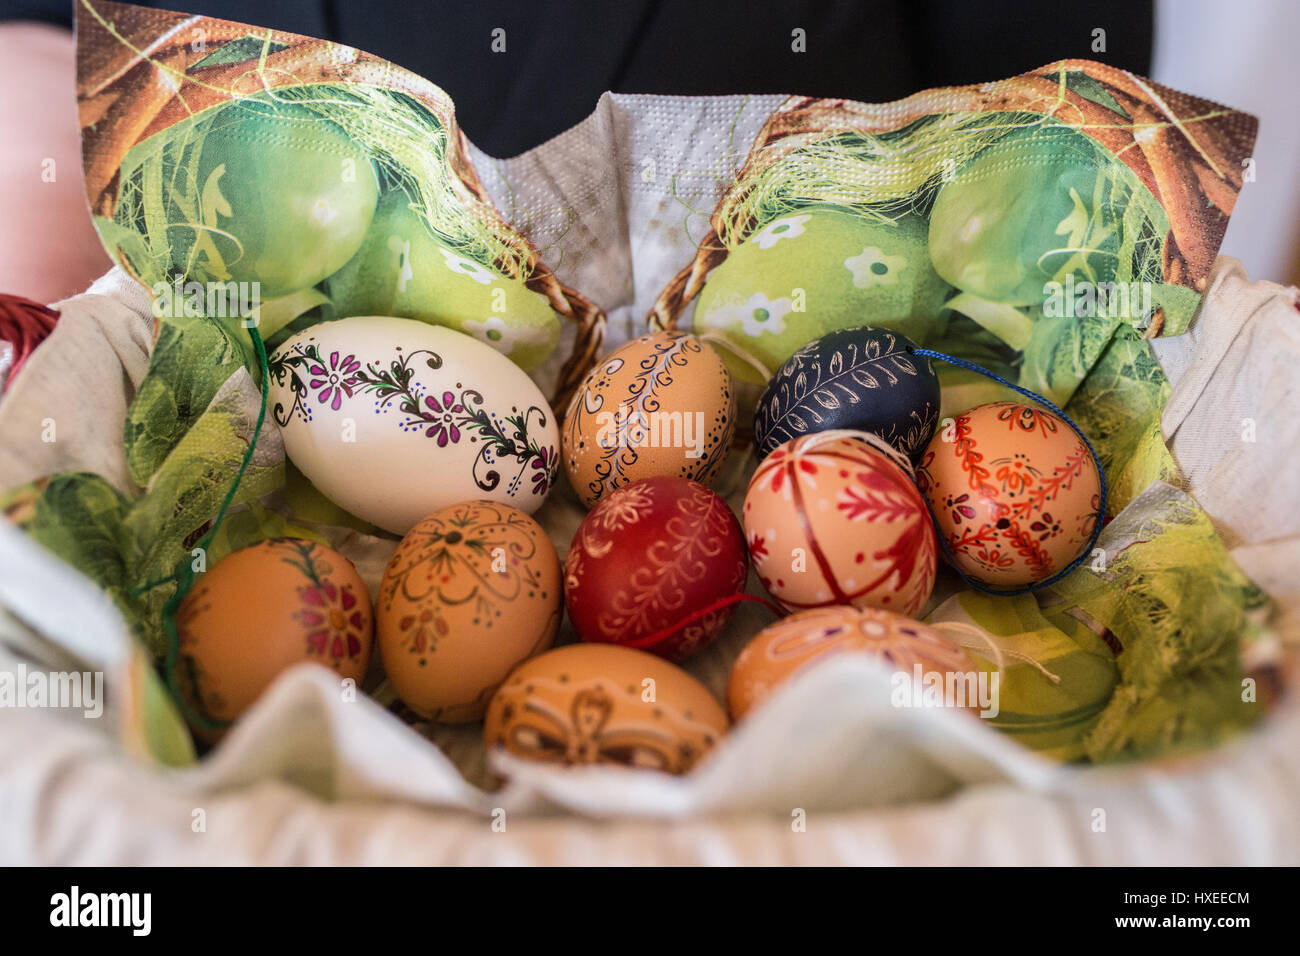 Ein Korb von schönen, bemalten Eiern, einer kulturellen Tradition zu Ostern in Ungarn. Stockfoto